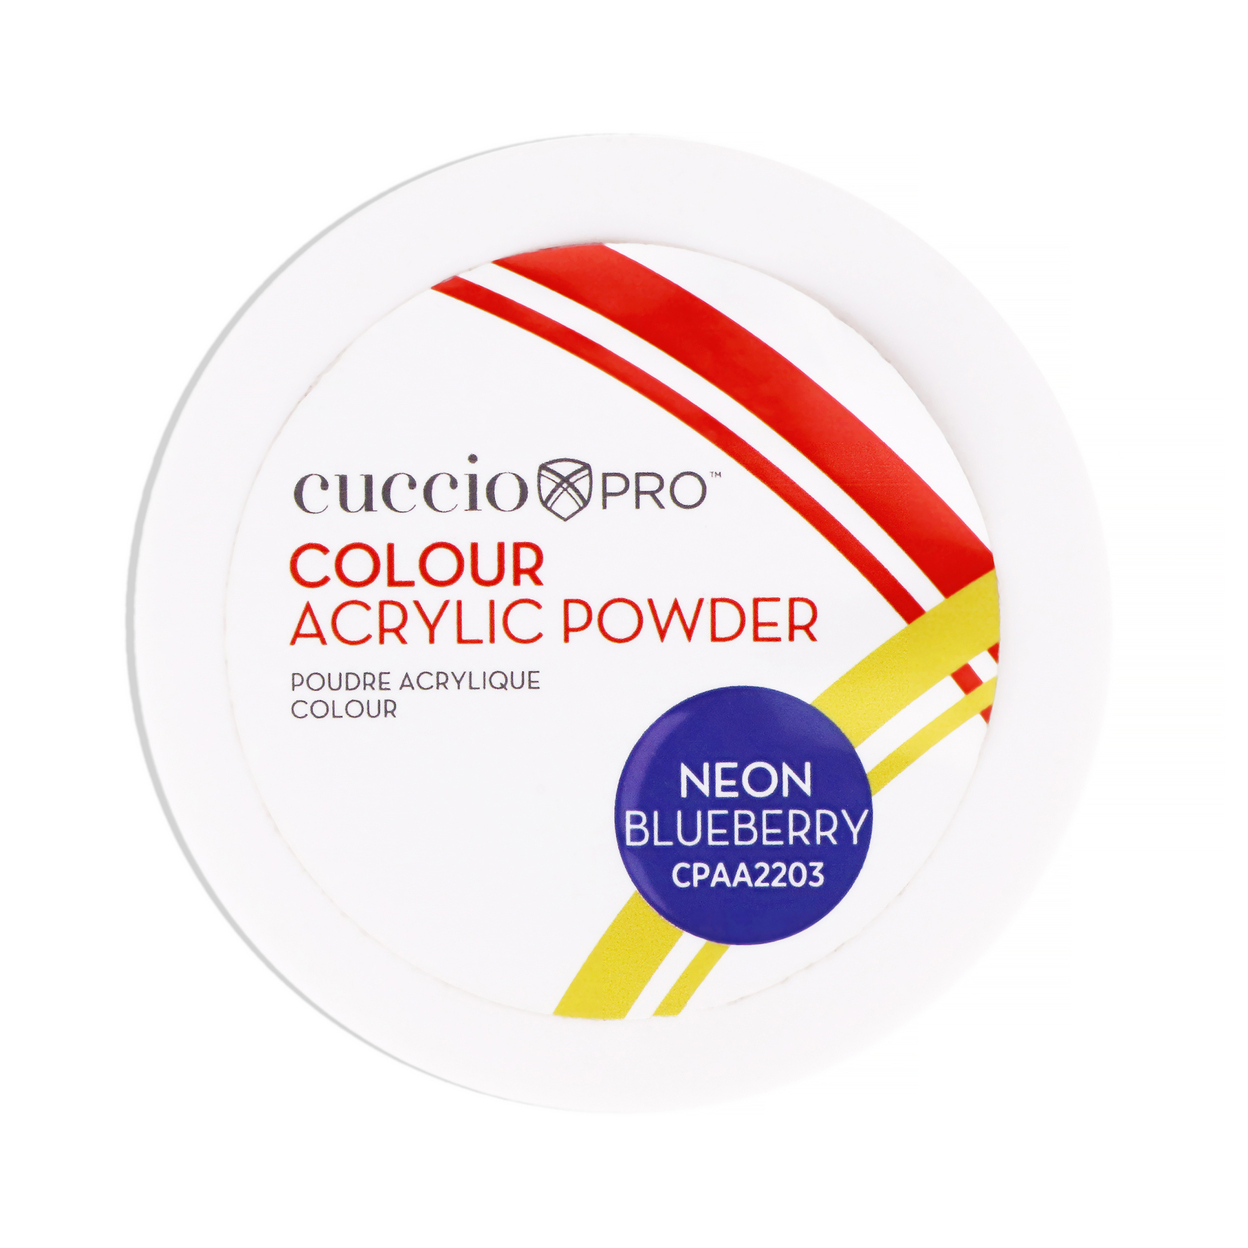 Cuccio PRO Colour Acrylic Powder - Neon Blueberry 1.6 Oz